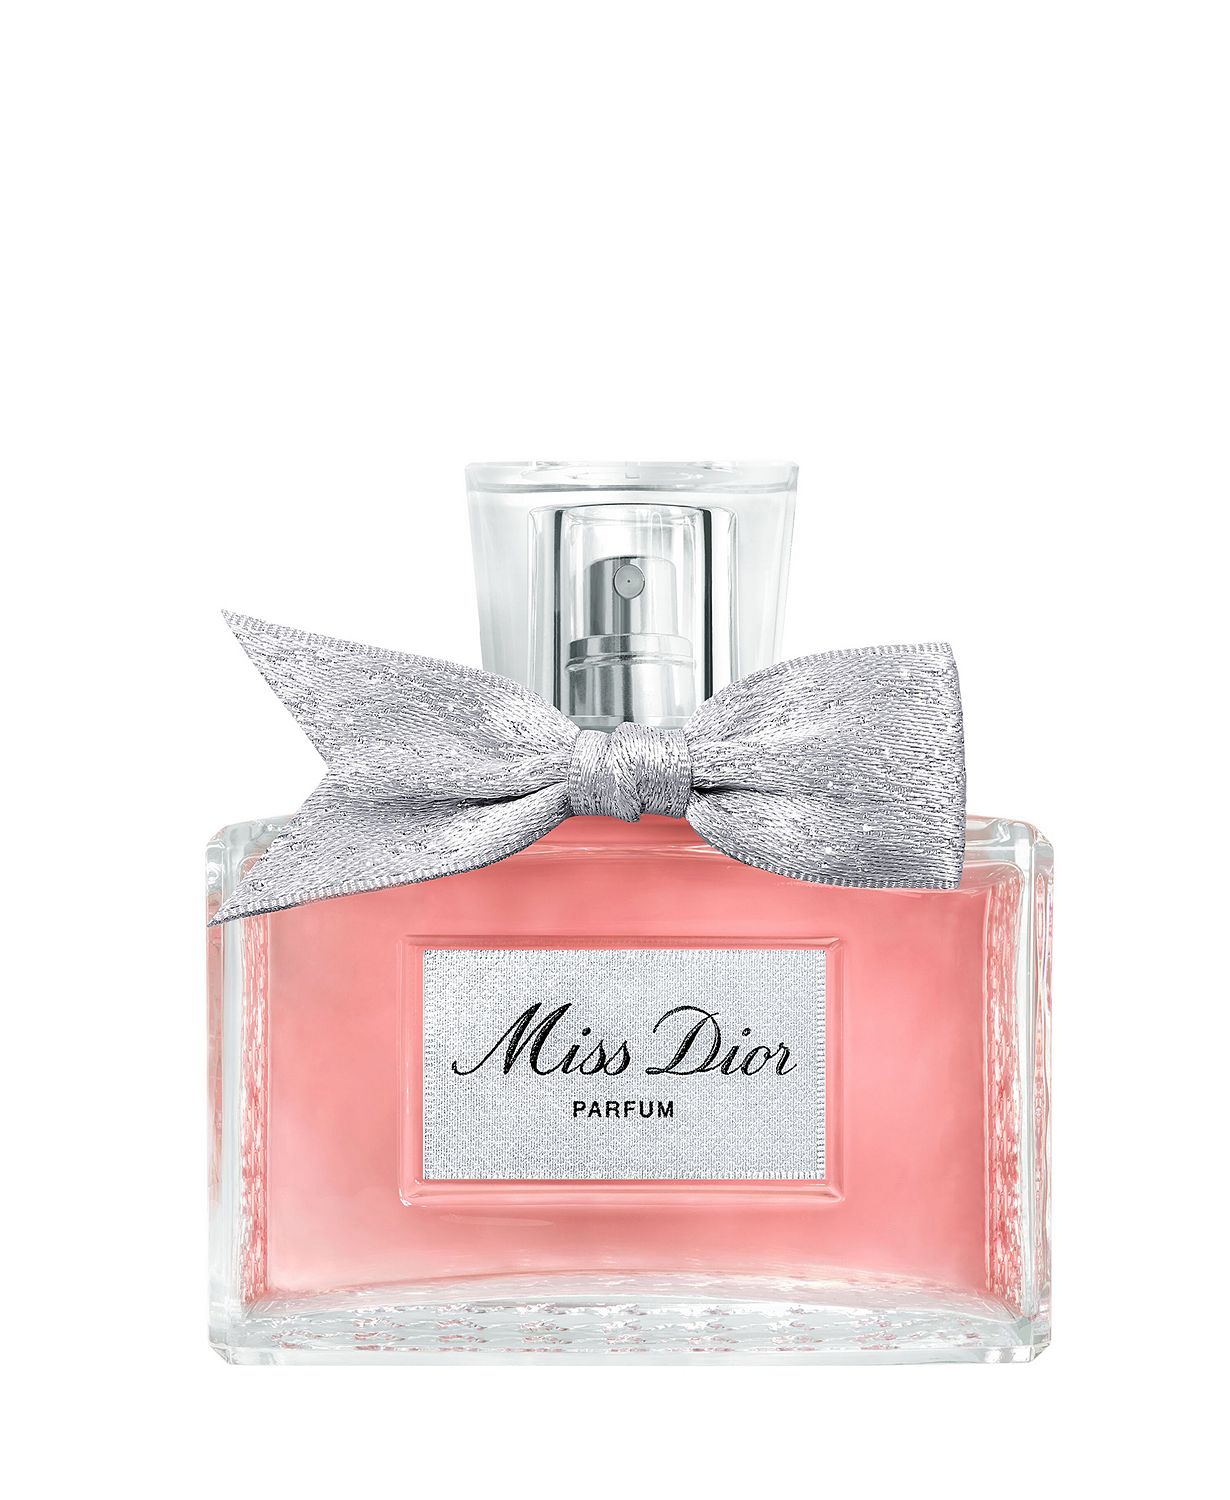 Miss Dior Parfum, 1.7 oz.